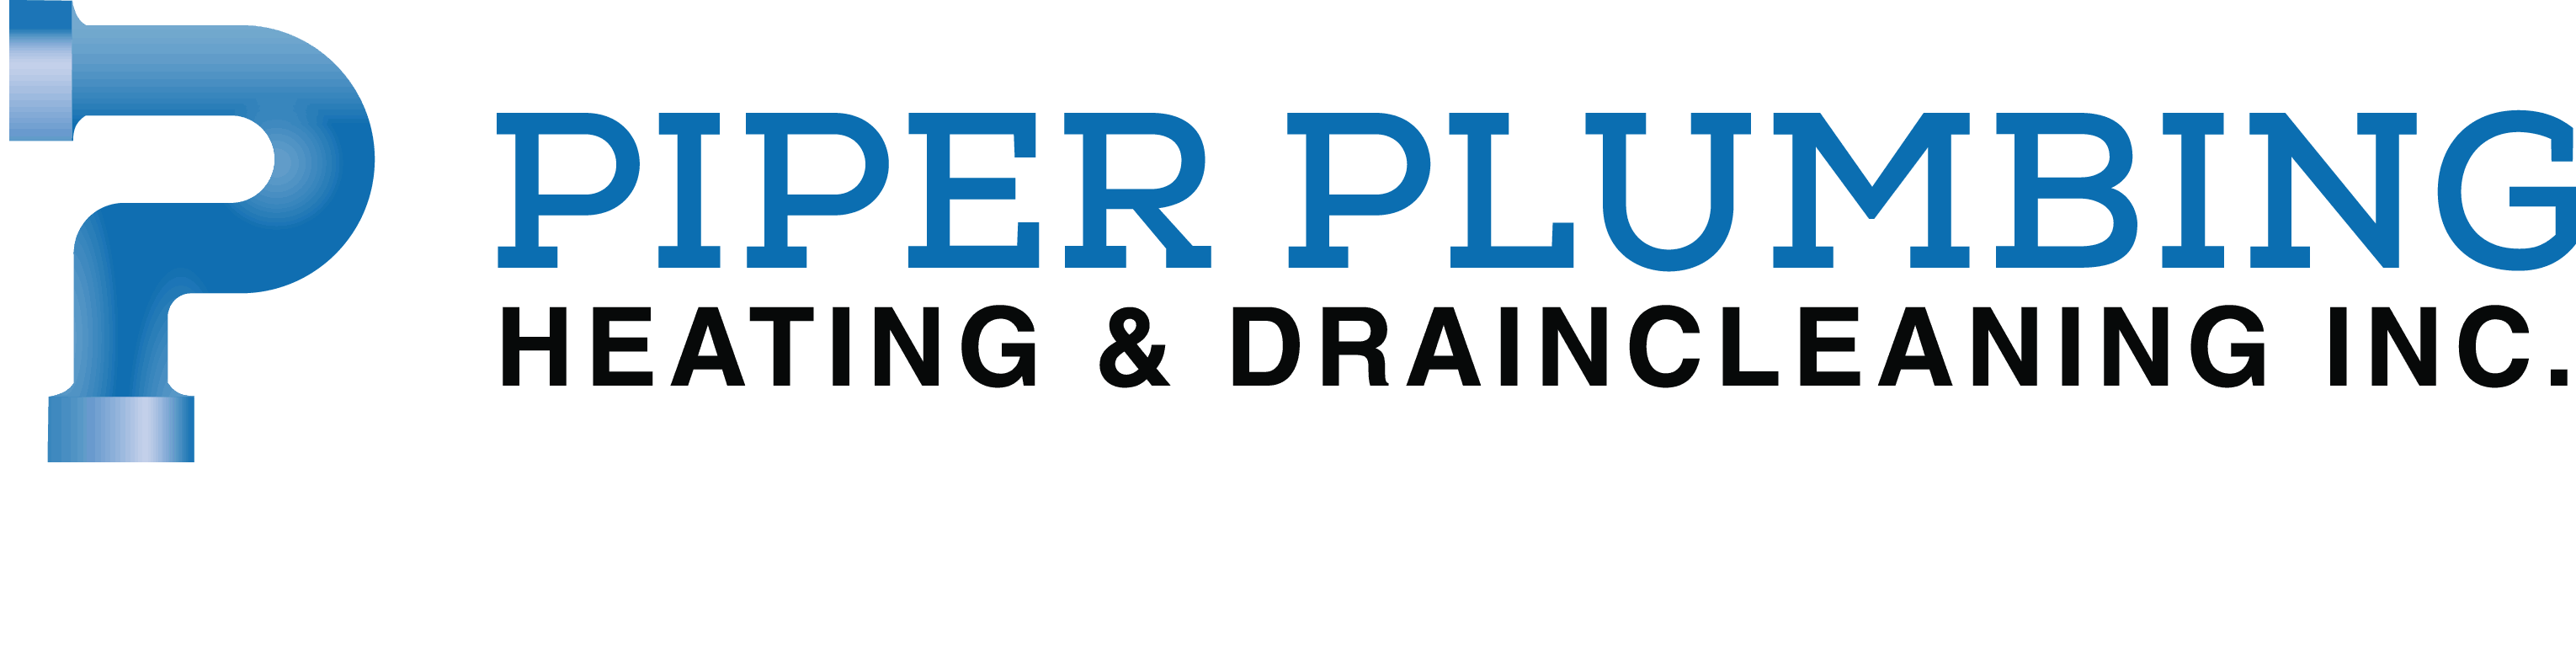 Piper-Plumbing